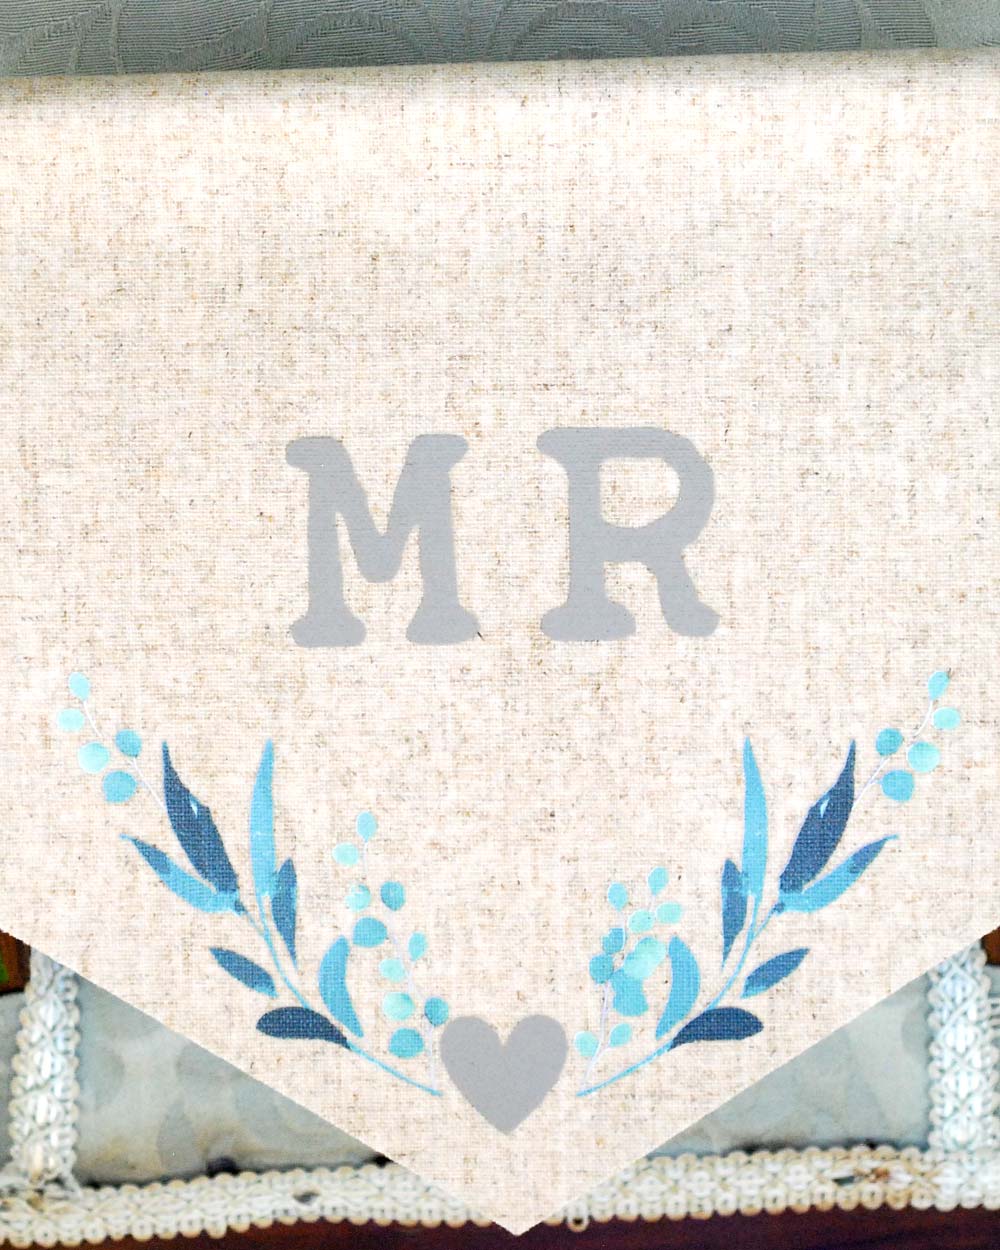 Mr & Mrs Wedding Chair Signs Leaf Print